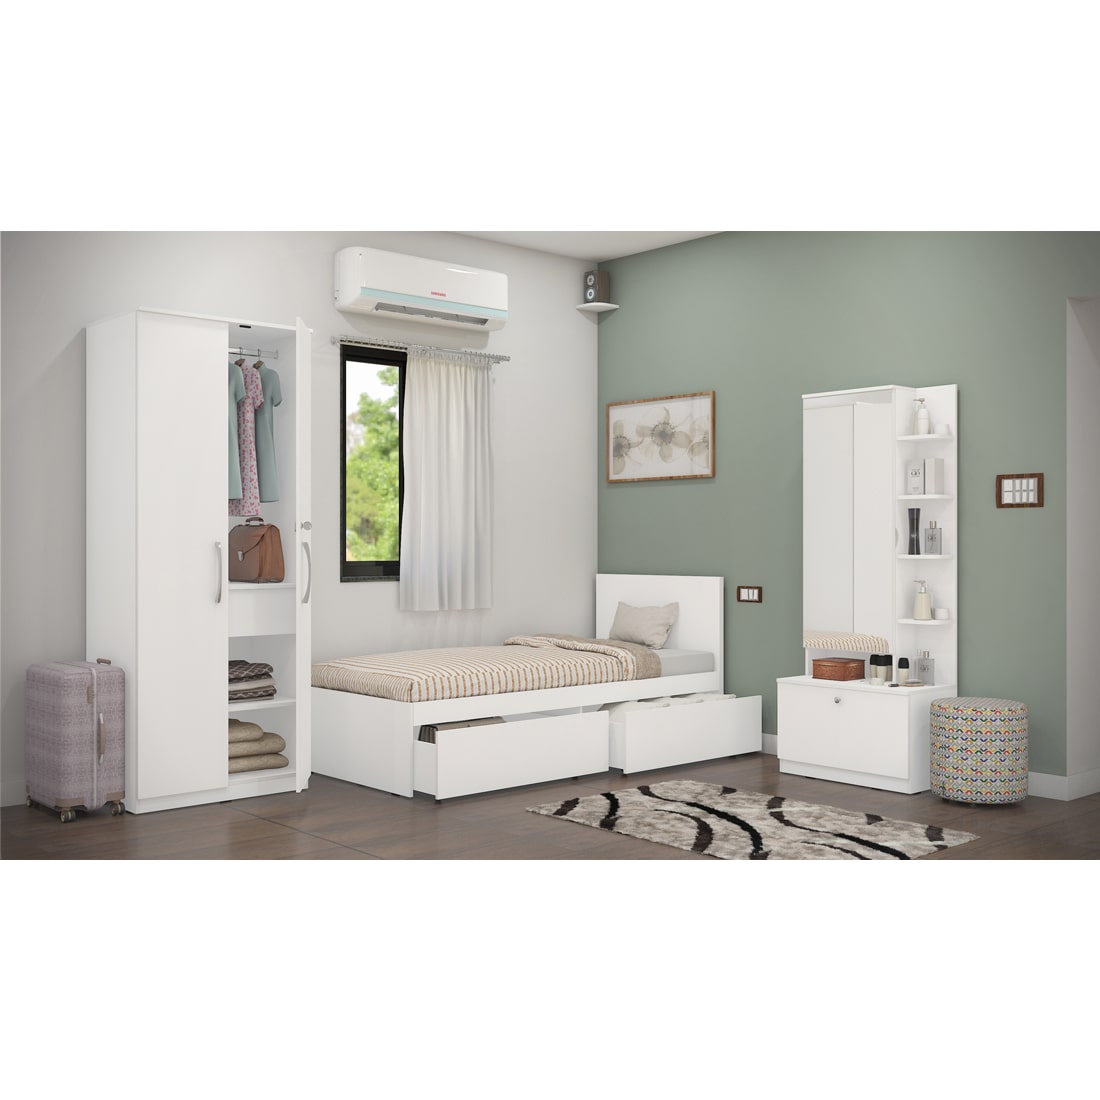 Finisa 15: Set of 3 Bedroom Furniture - 2 door Wardrobe, Single Bed with Headboard, Dresser